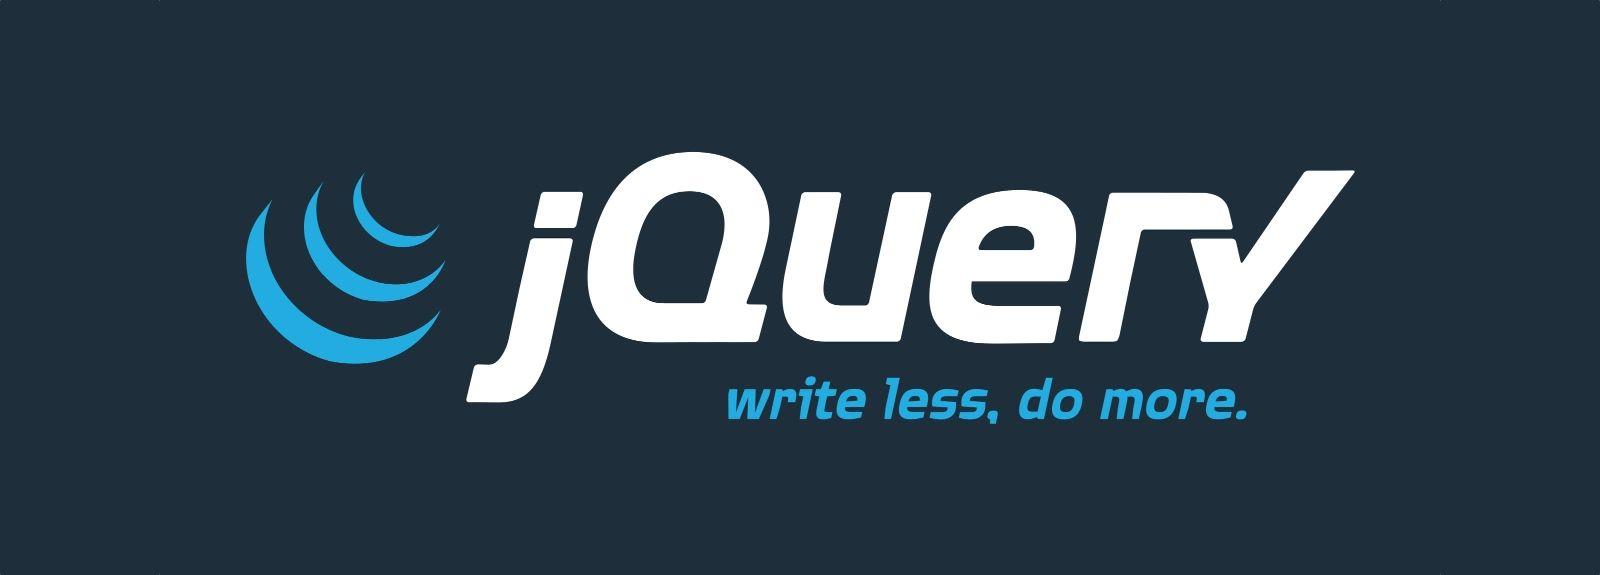 Sortie de jQueryMobile en version 1.0alpha3 et son grand frère jQuery en version 1.5